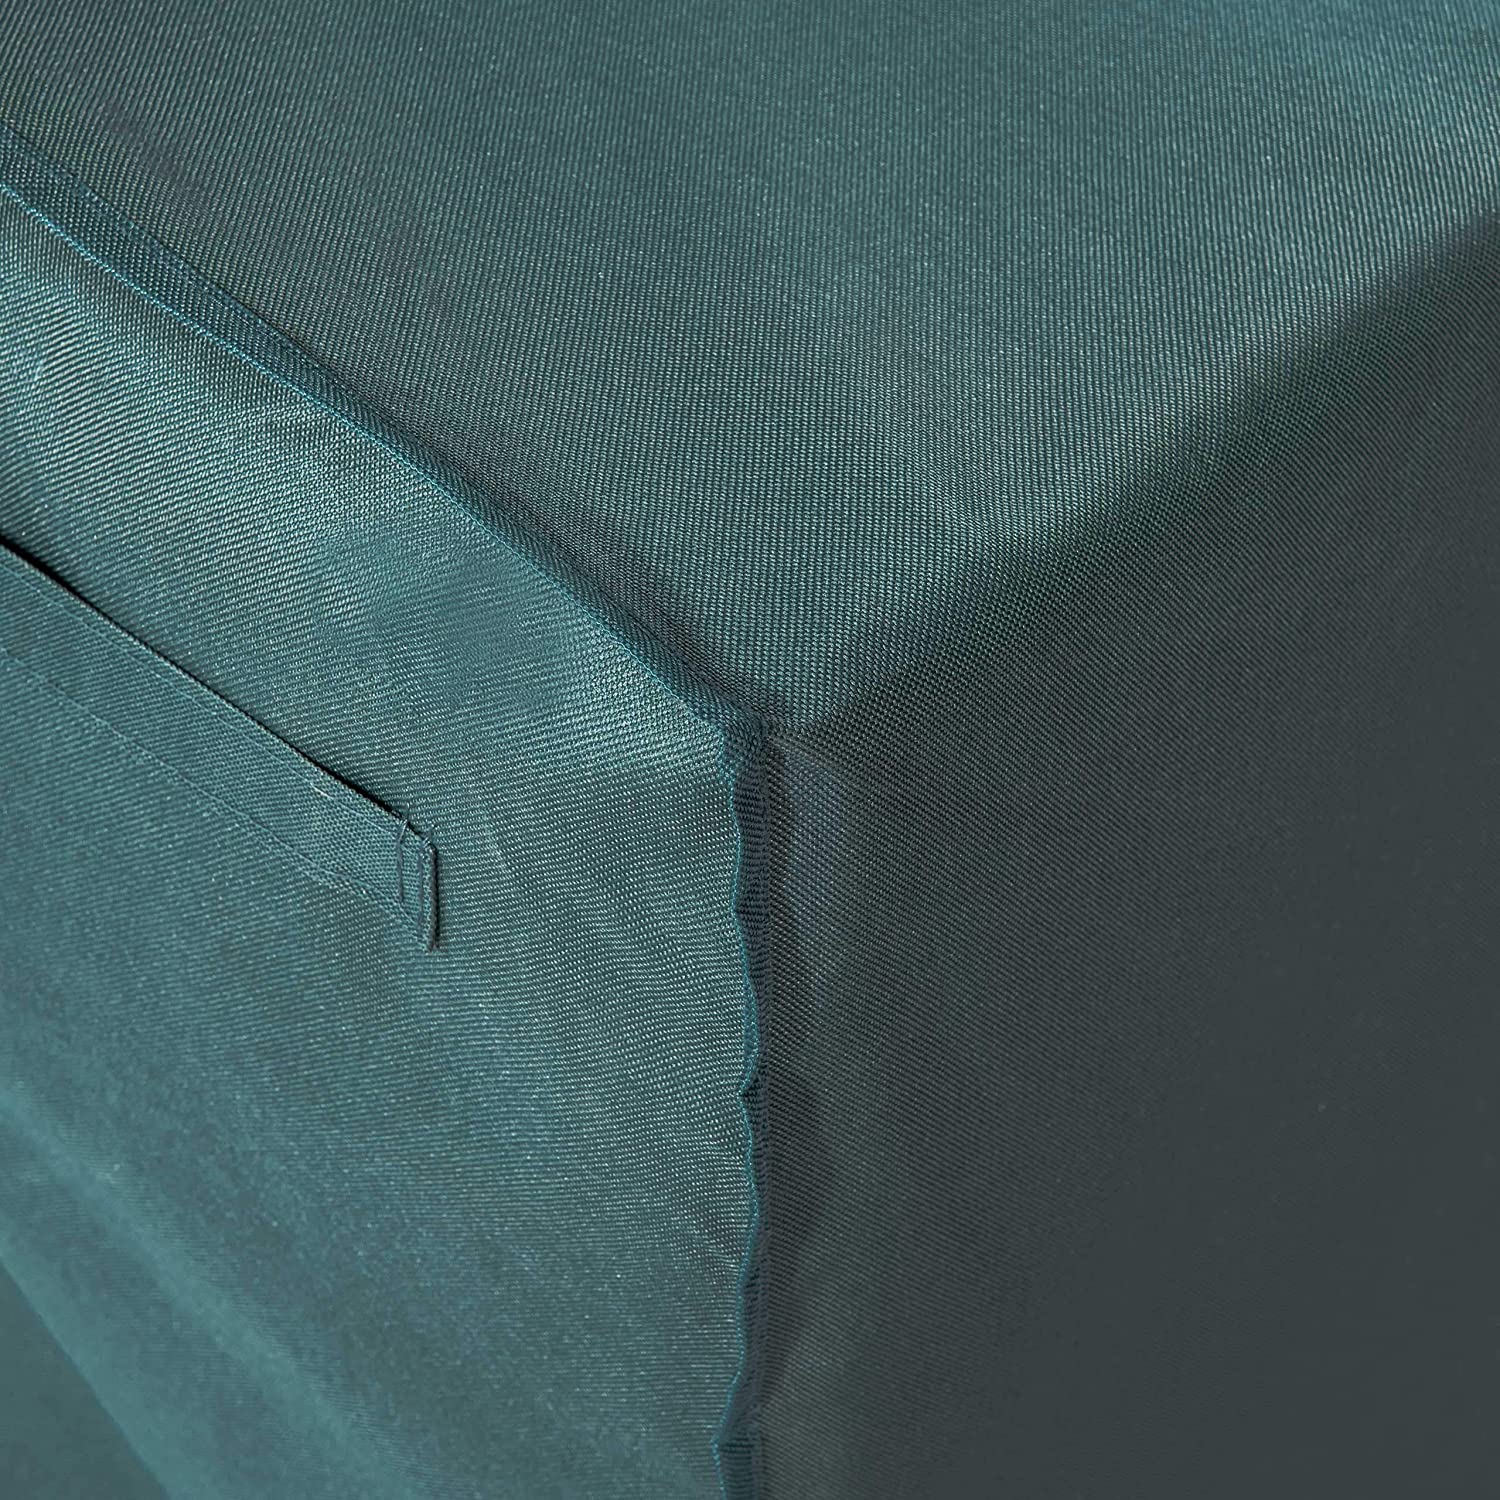 Abdeckplane für Gartenmöbel - 242 x 162 x 100 cm - Grün/Grau